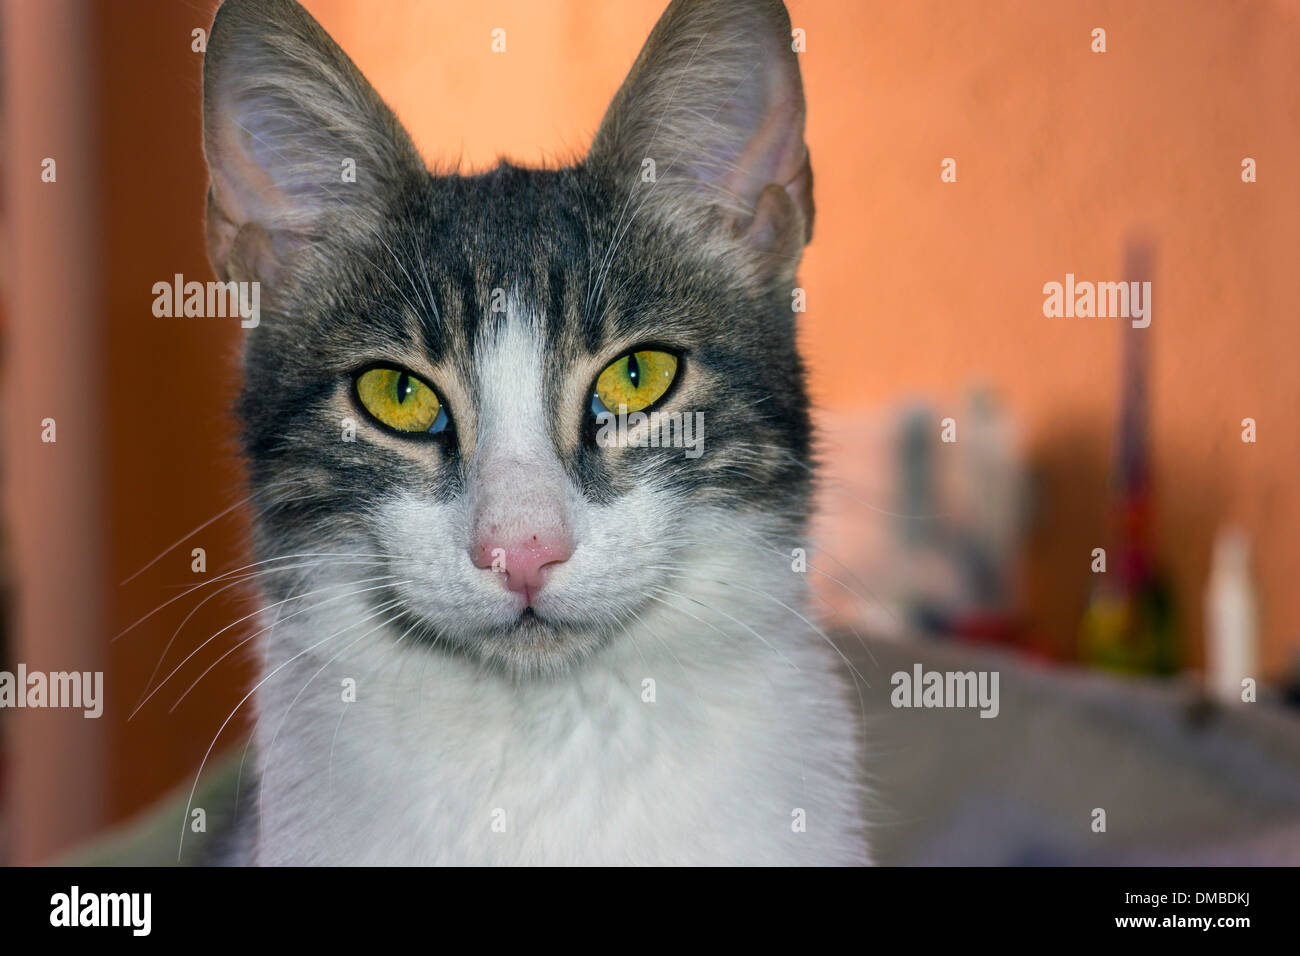 Braune und weiße Katze mit gelben Augen und großen Ohren, Blick in die Kamera Stockfoto